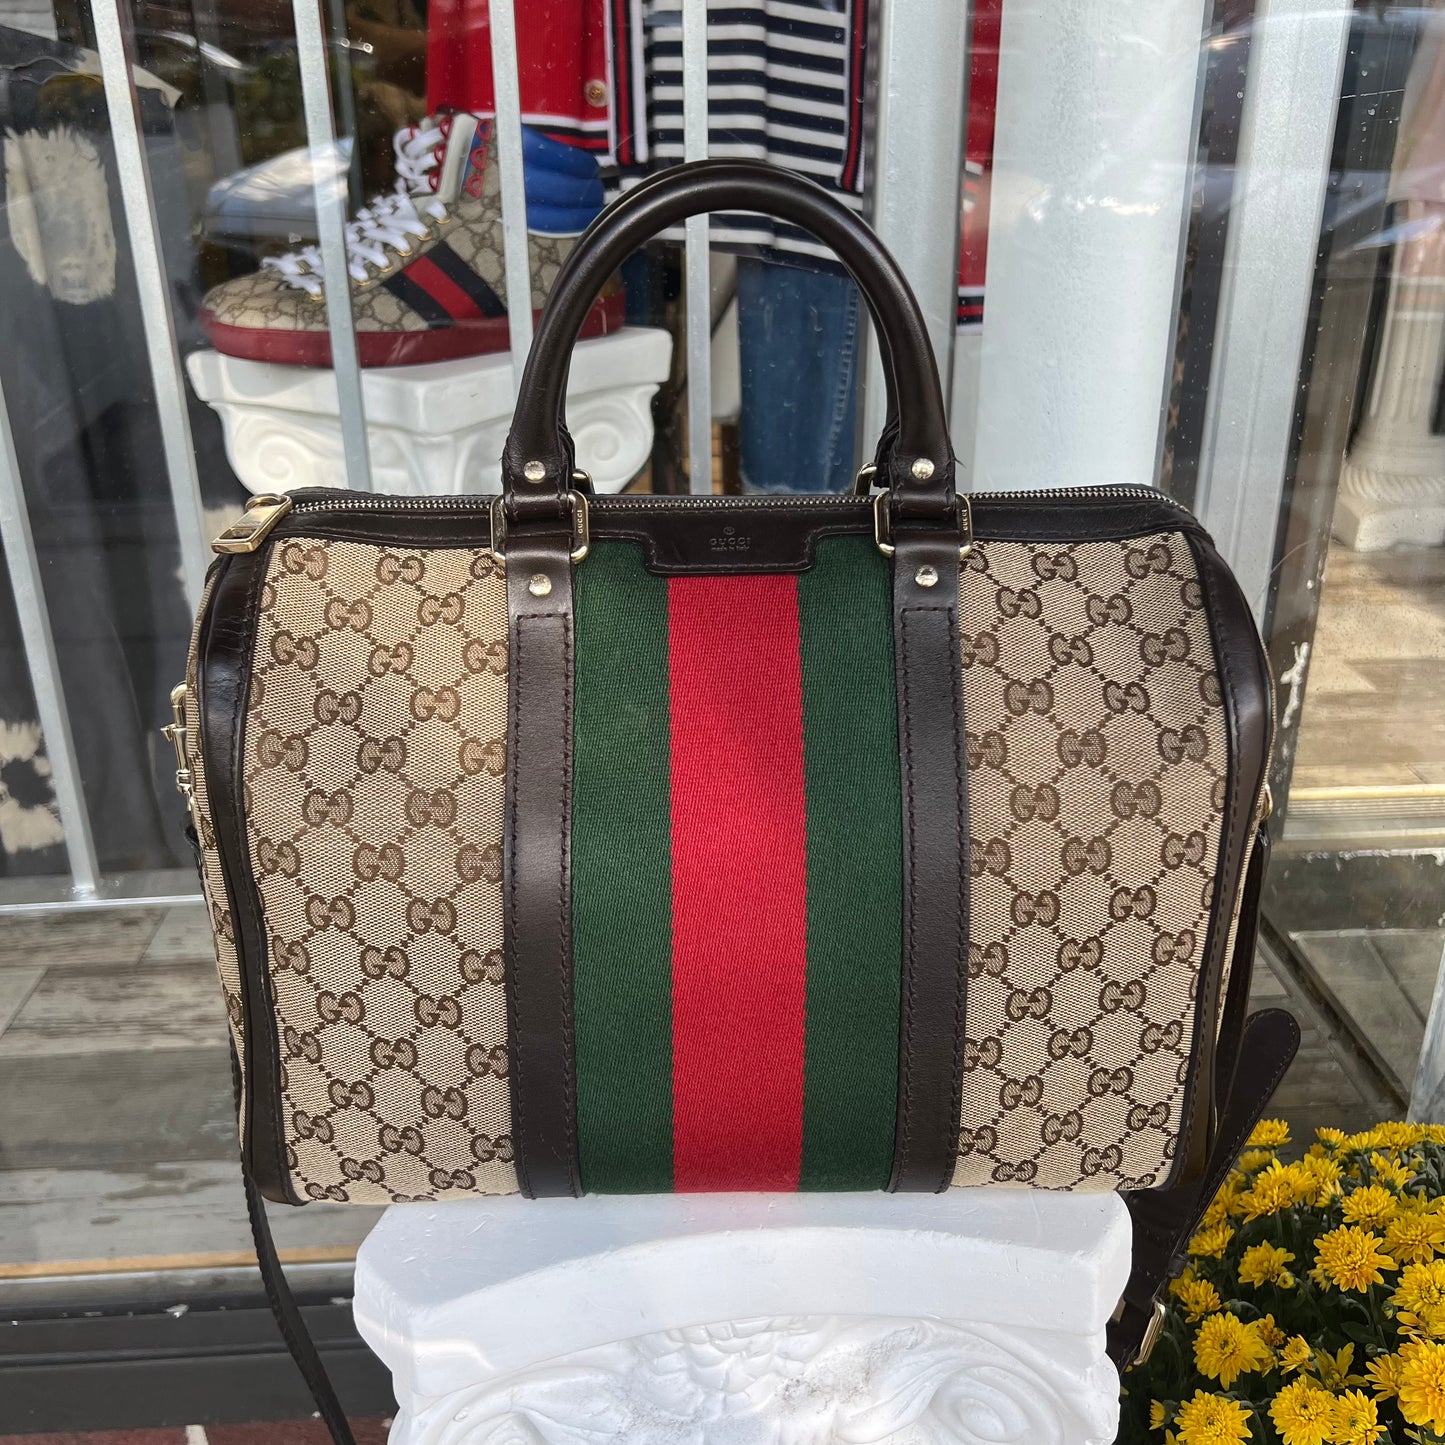 Gucci GG Canvas Web Boston Bag